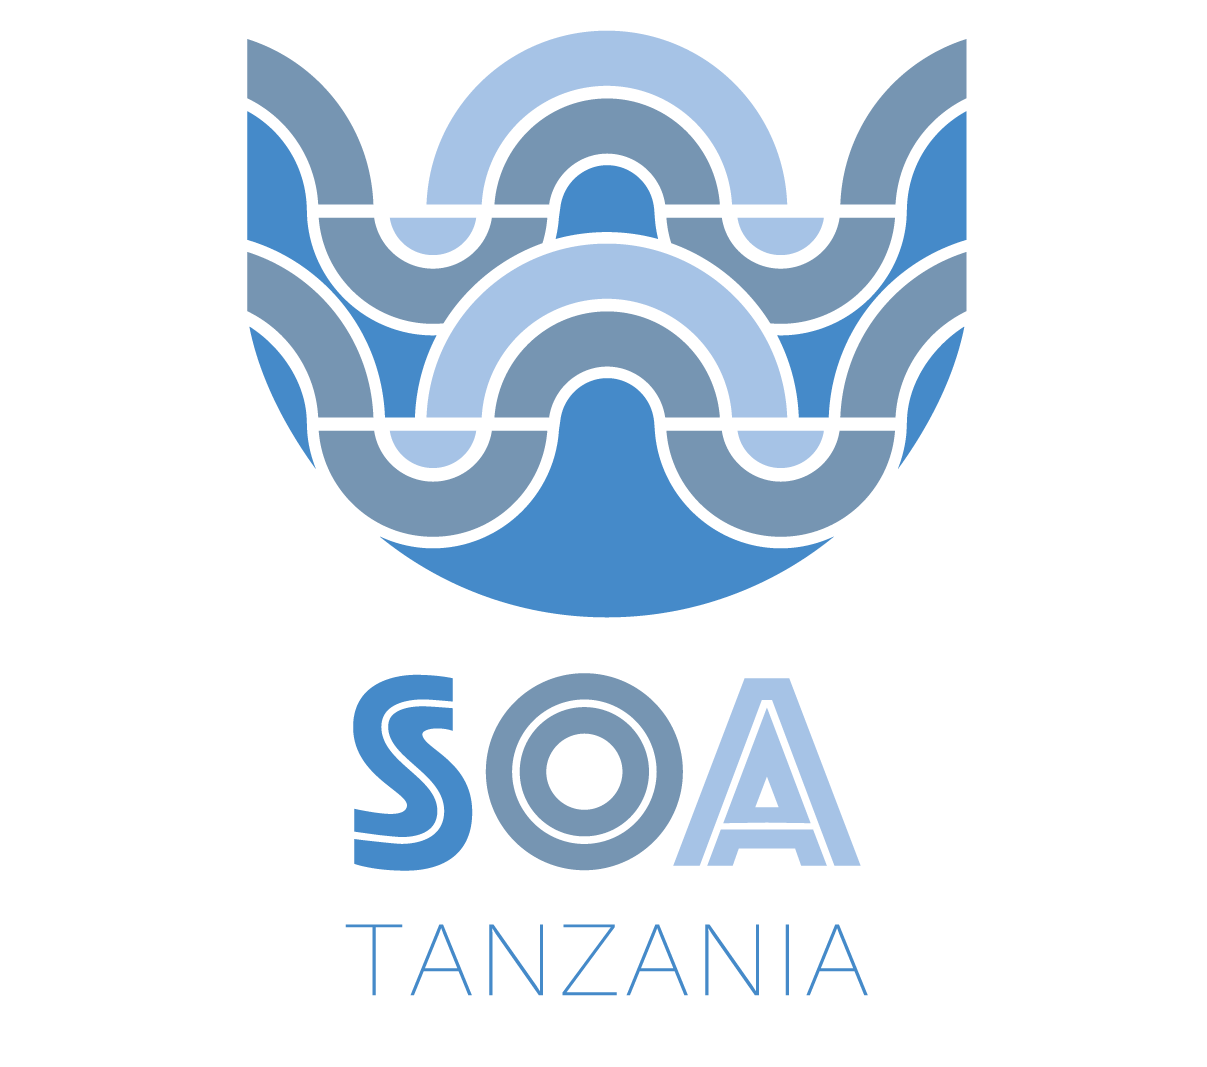 Tanzania Vertical